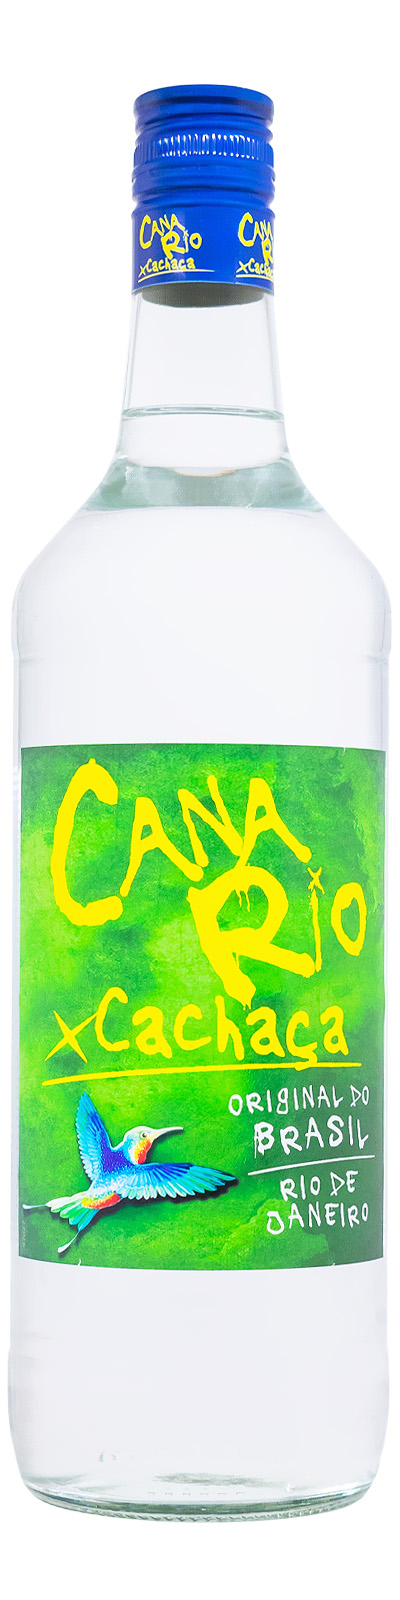 CanaRio Cachaca - 1 Liter 38% vol